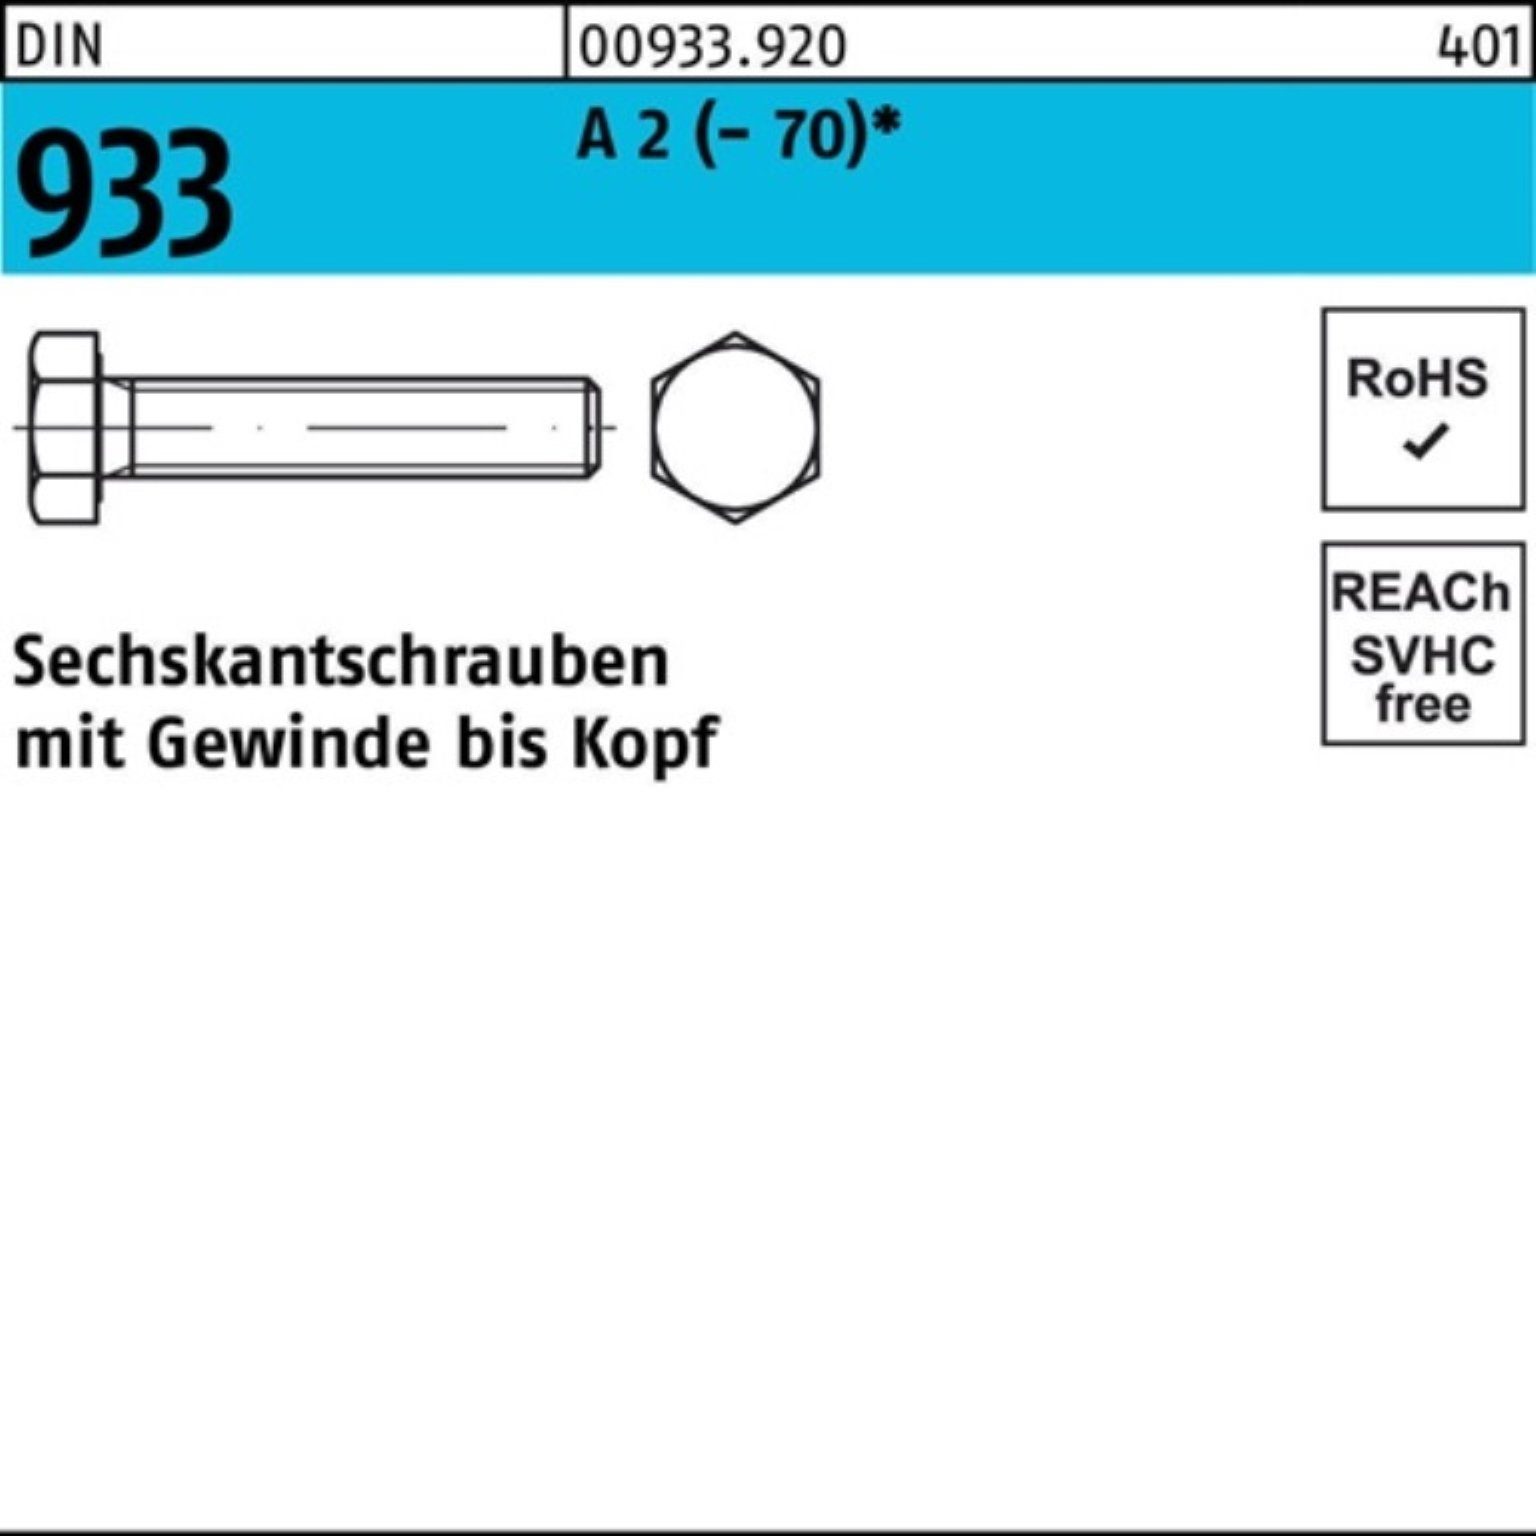 Reyher Sechskantschraube 200er Pack Sechskantschraube DIN 933 VG M8x 10 A 2 (70) 200 Stück D